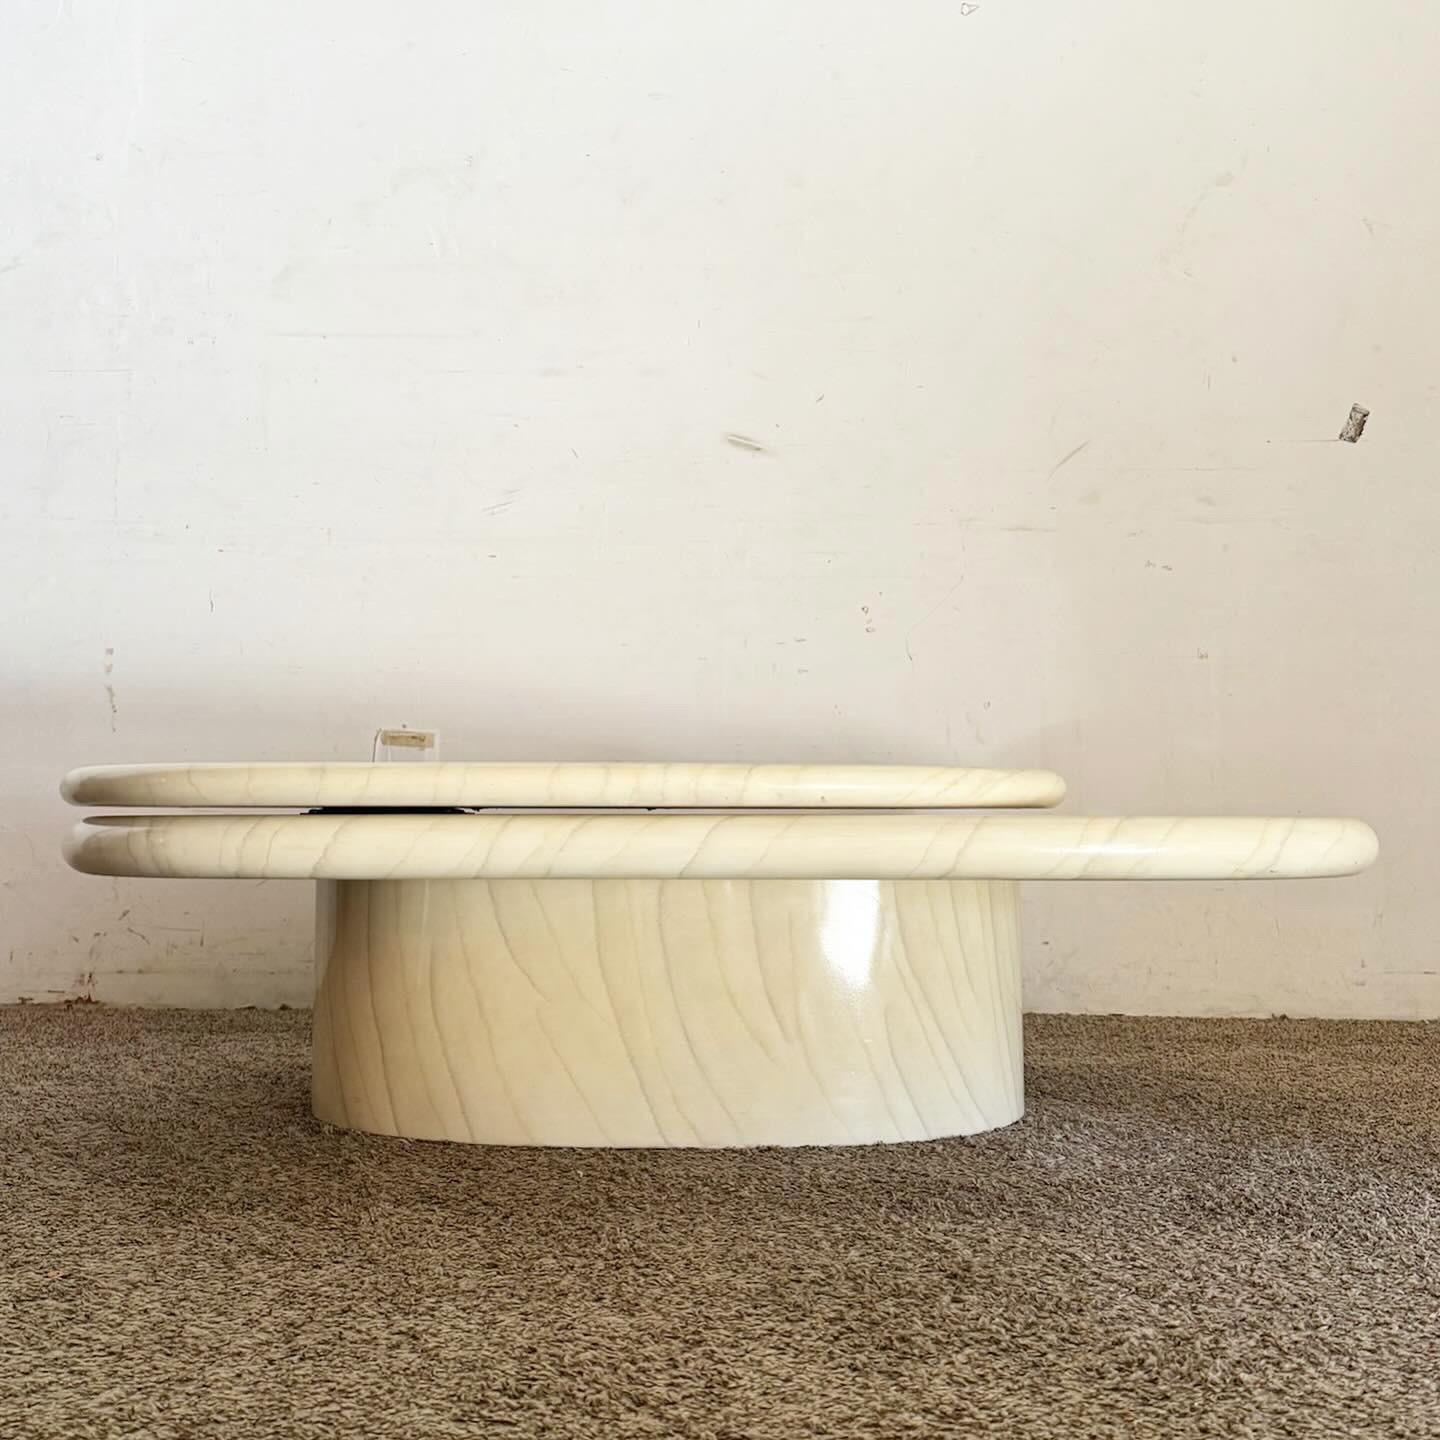 Révolutionnez votre espace de vie avec la table basse ovale à plateau pivotant en fausse pierre laquée postmoderne. Cette table présente un design unique de plateau pivotant à deux niveaux, offrant à la fois style et fonctionnalité. La finition